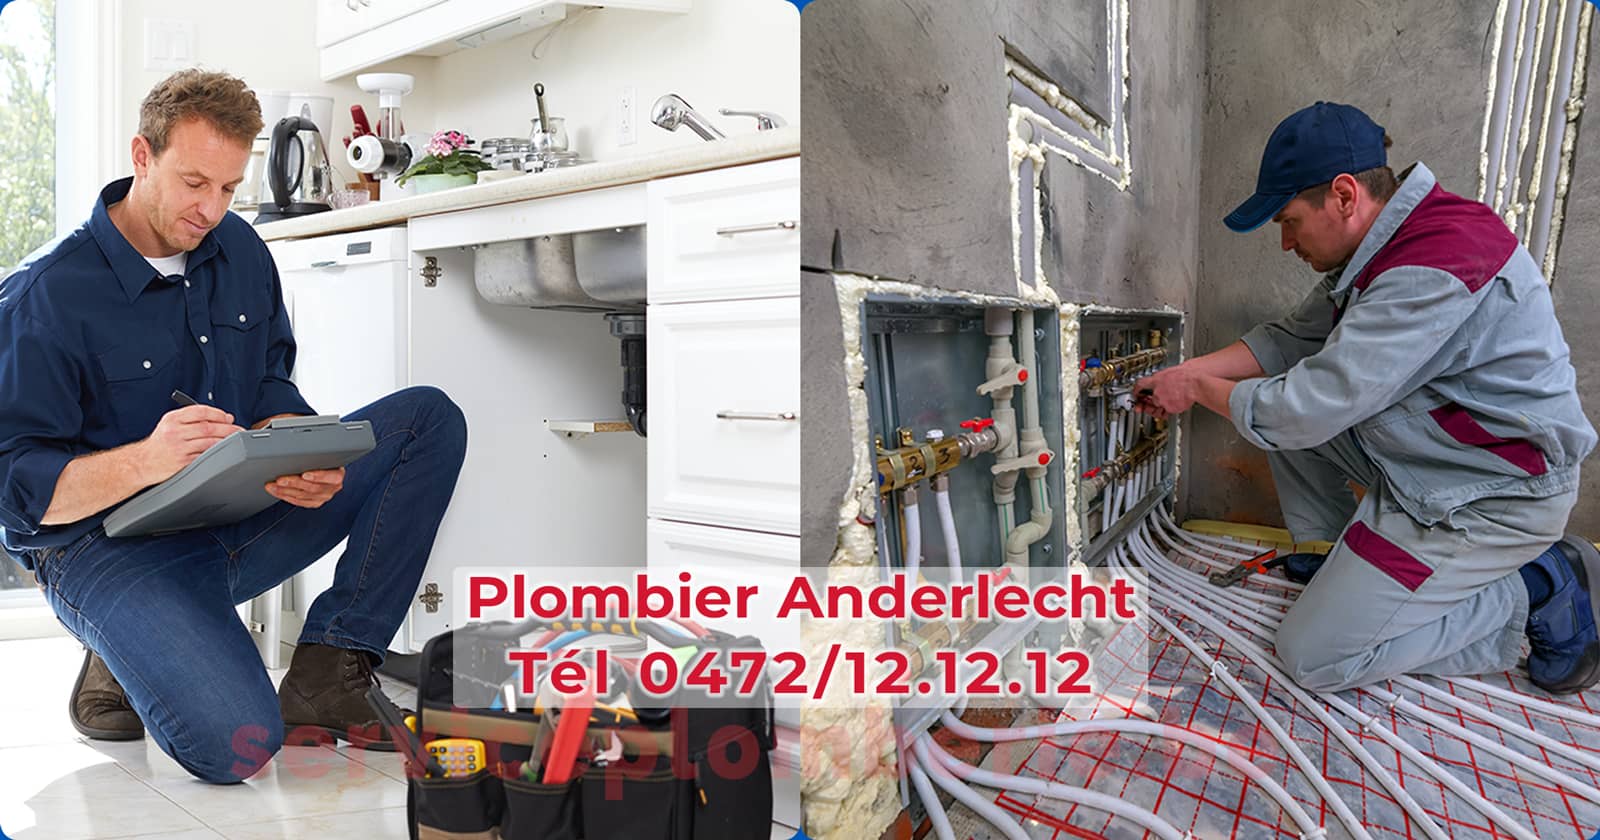 Plombier Anderlecht Agréé Professionnel Service Plomberie Tél 0472/12.12.12